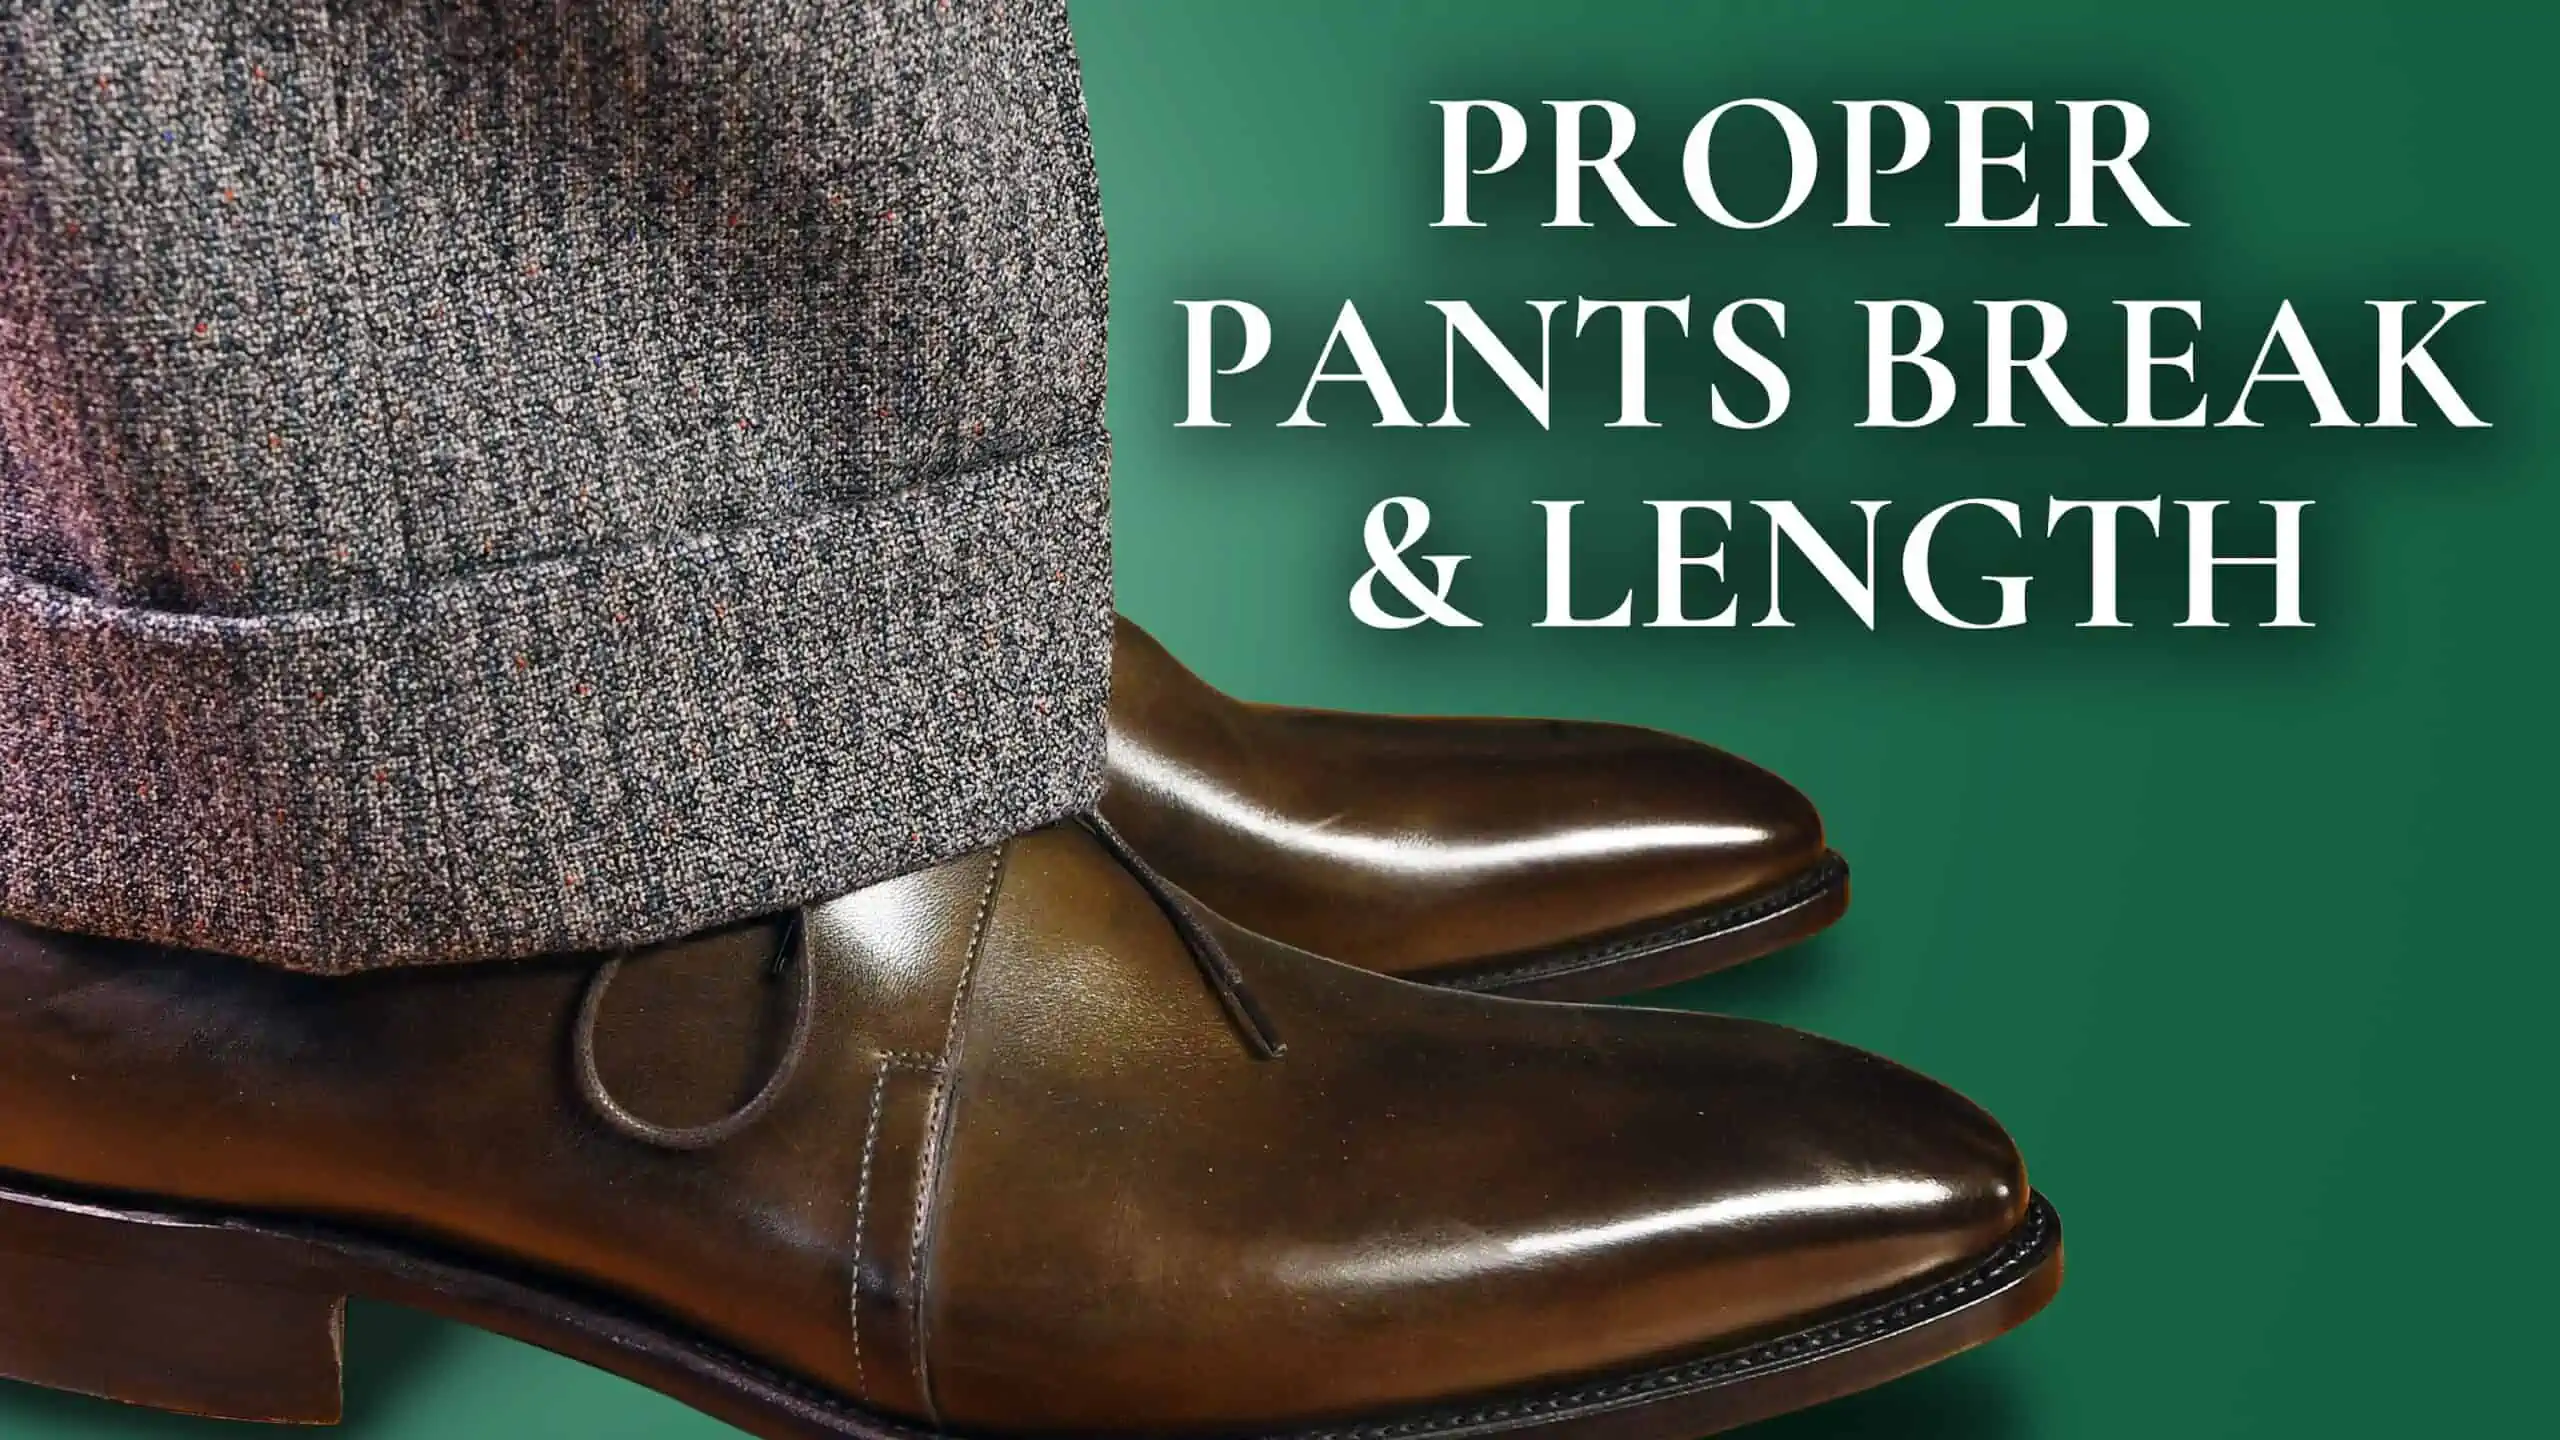 Proper Suit Pants Length  Types of Trouser Breaks  Suits Expert